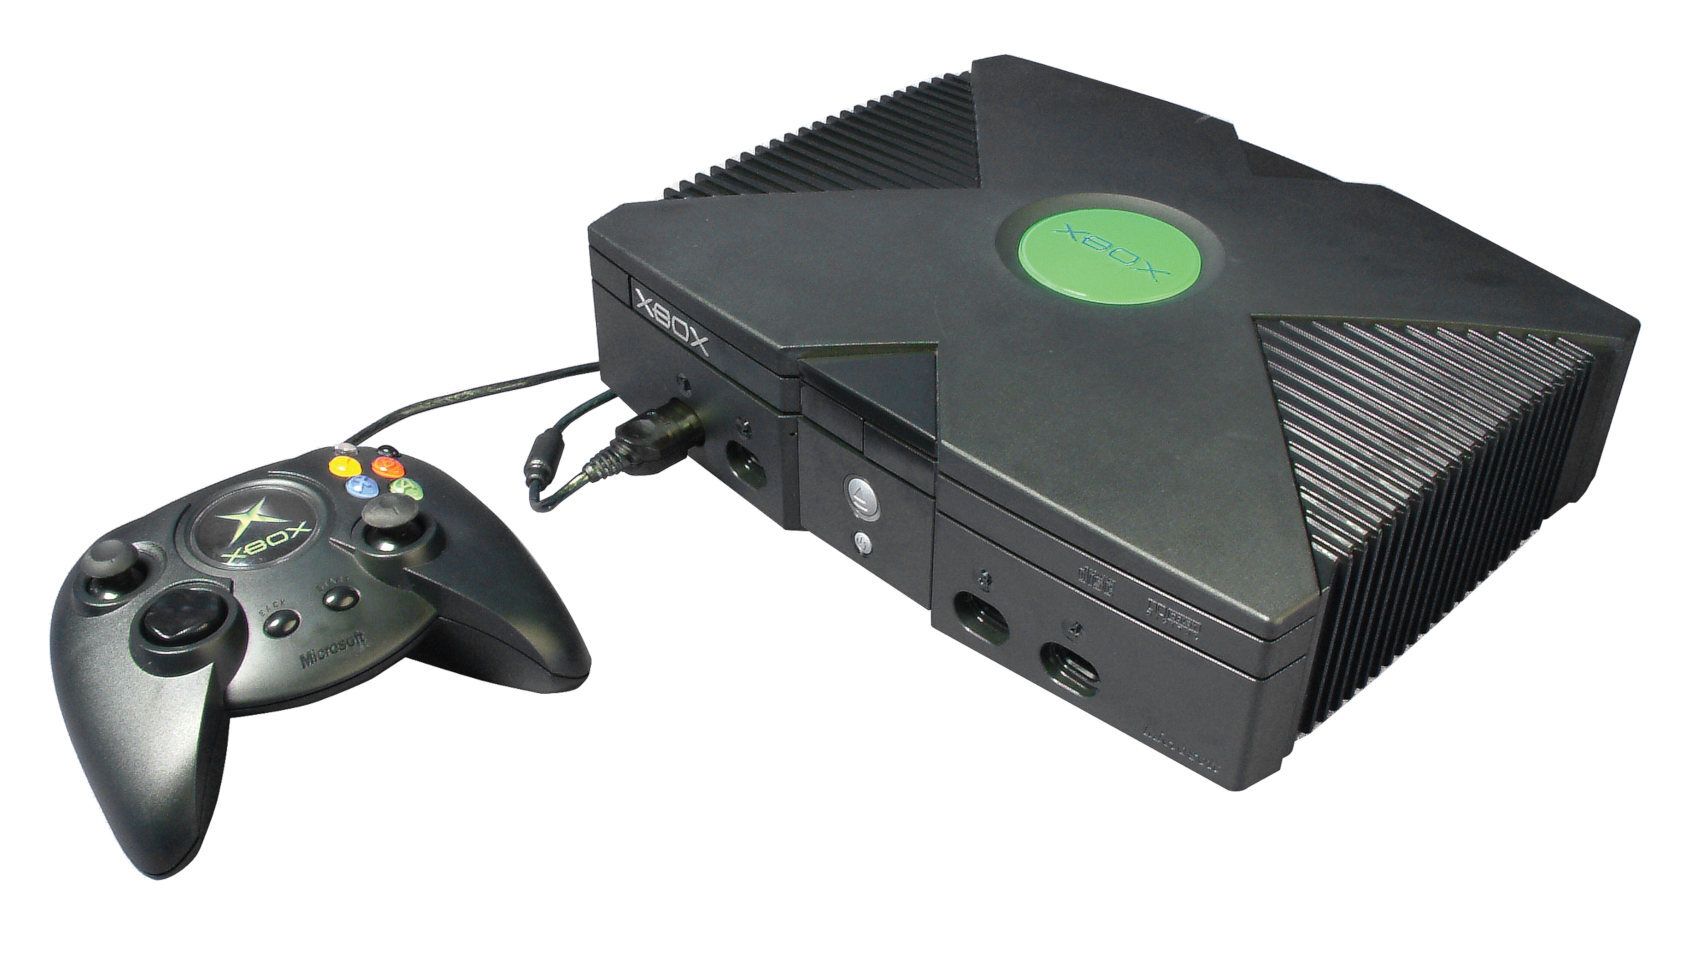 La Xbox original usaba un sistema operativo basado en Windows 2000